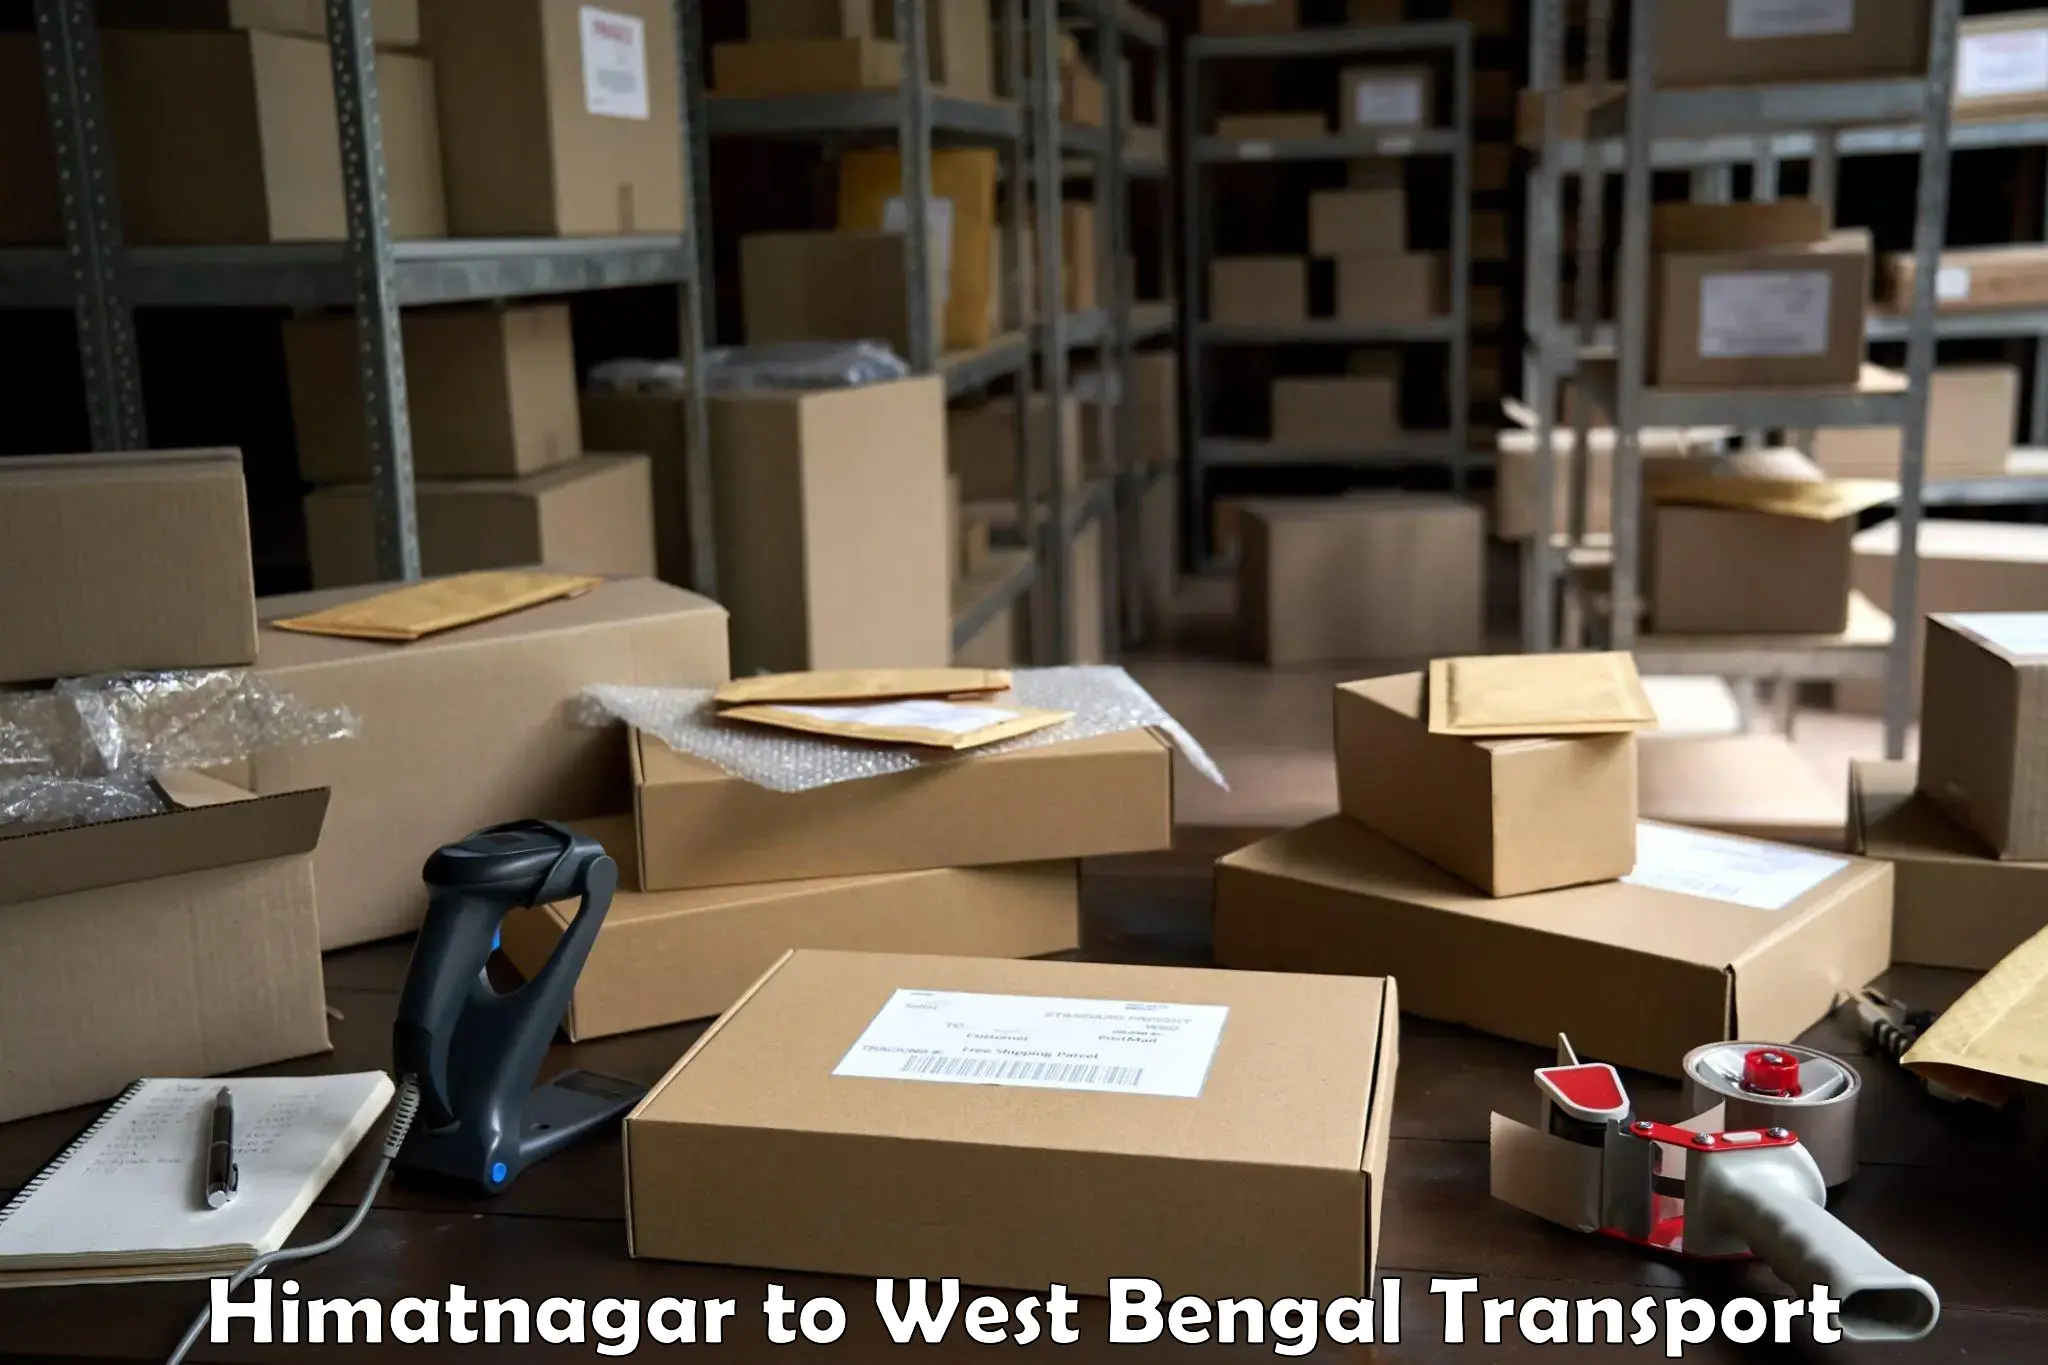 Vehicle parcel service Himatnagar to Manglamaro